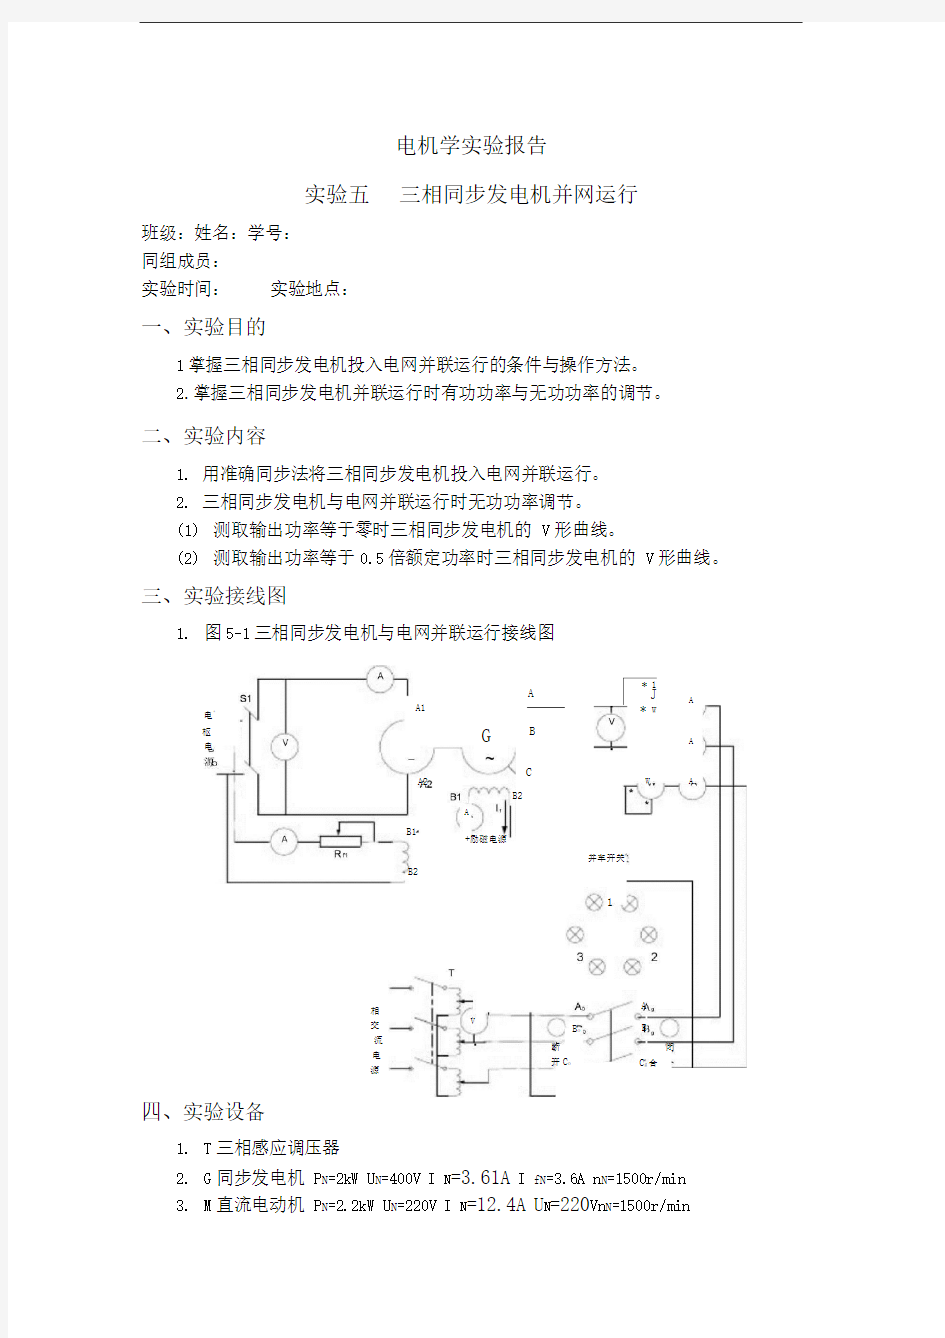 上海交大电机学实验+三相同步发电机并网运行